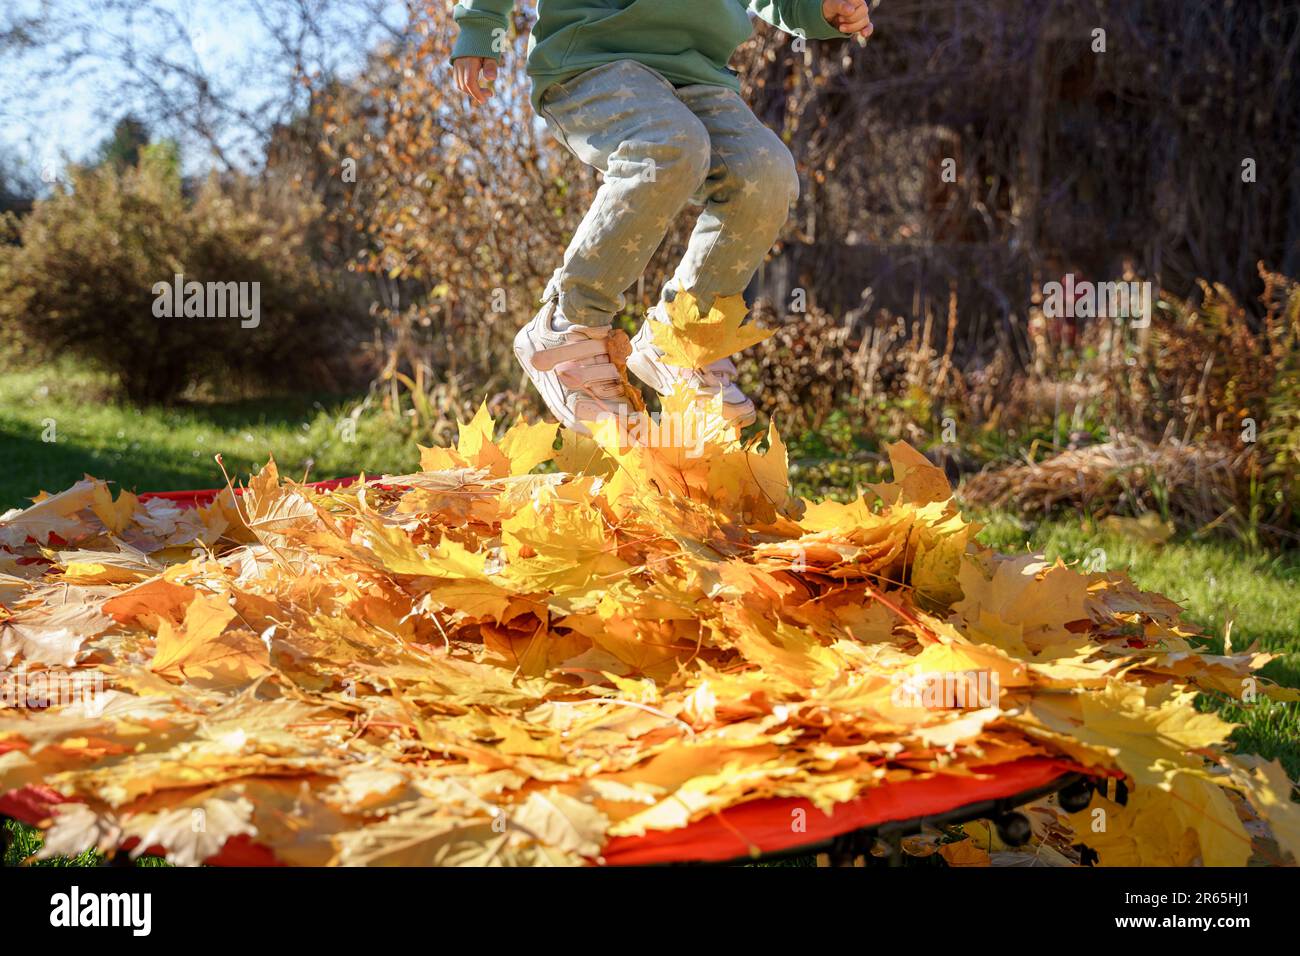 Jeune fille sautant sur le trampoline avec des feuilles d'automne. Feuillage d'érable jaune vif. Enfant marchant, s'amuser, jouer dans l'arrière-cour d'automne. Extérieur Banque D'Images